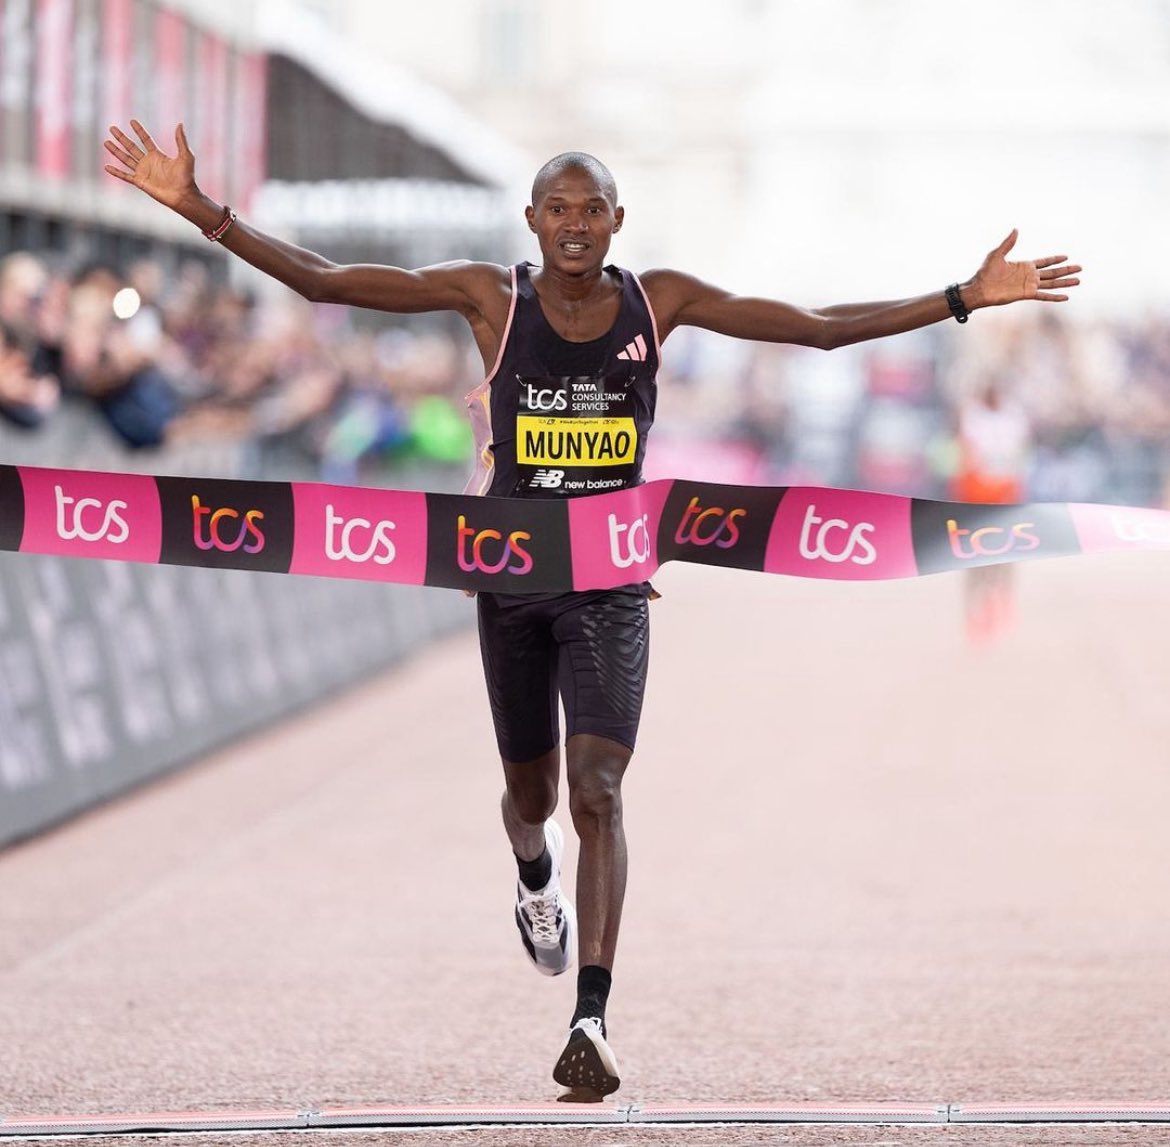 Alexander Munyao es el ganador del @londonmarathon con un tiempo de 2:04:01. Kenenisa Bekele queda en segundo lugar con un tiempo de 2:04:15. 📷 @worldathletics #EntreRunners